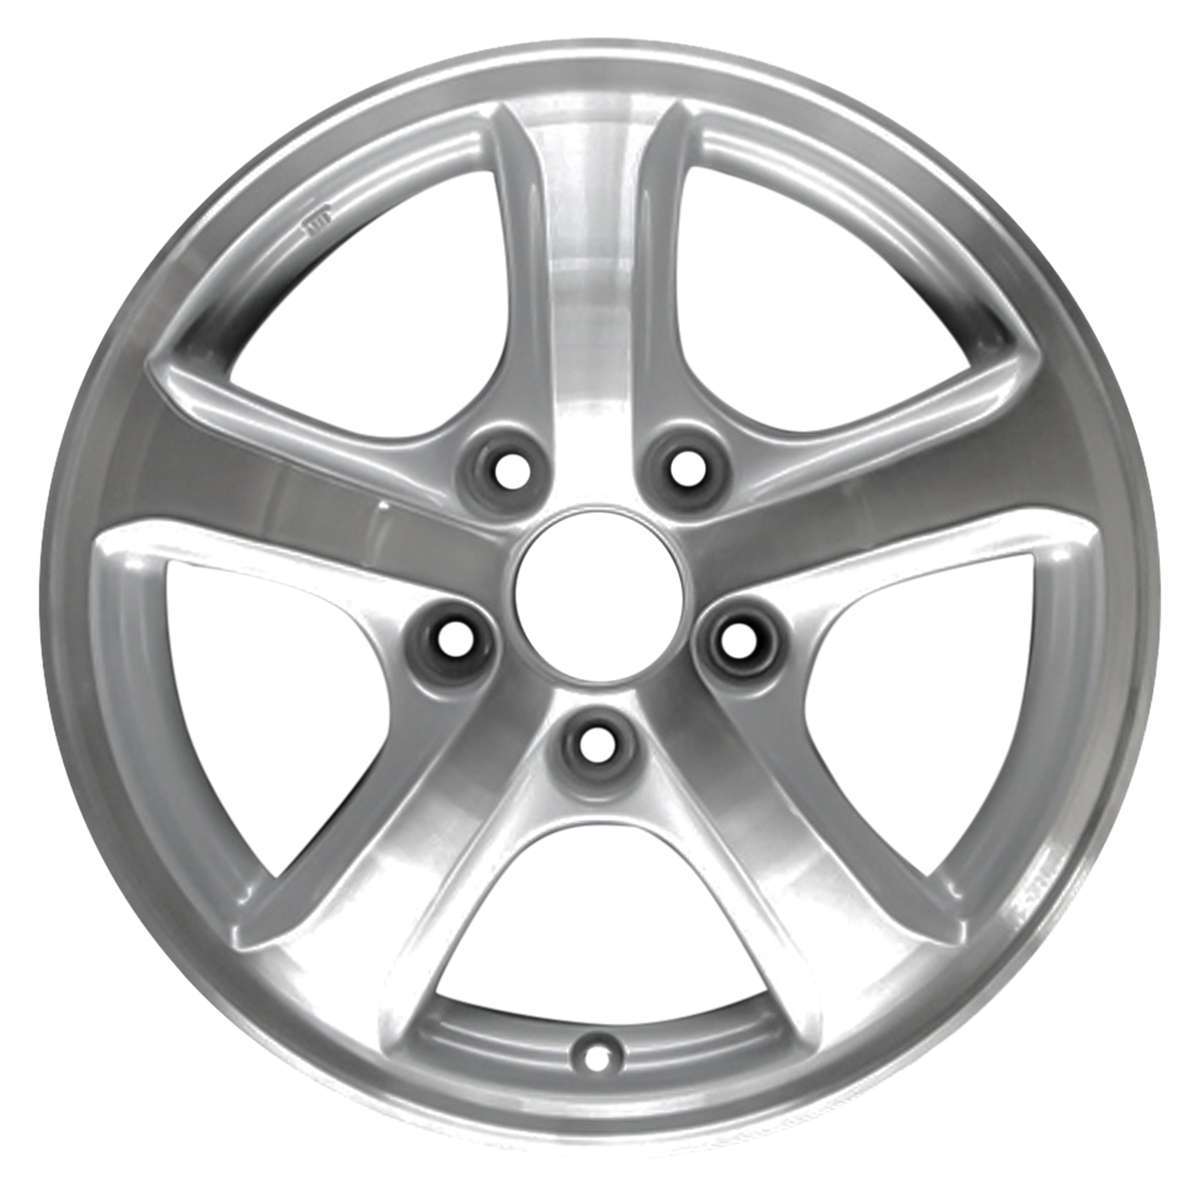 2015 Honda Civic 15" OEM Wheel Rim W64027MS